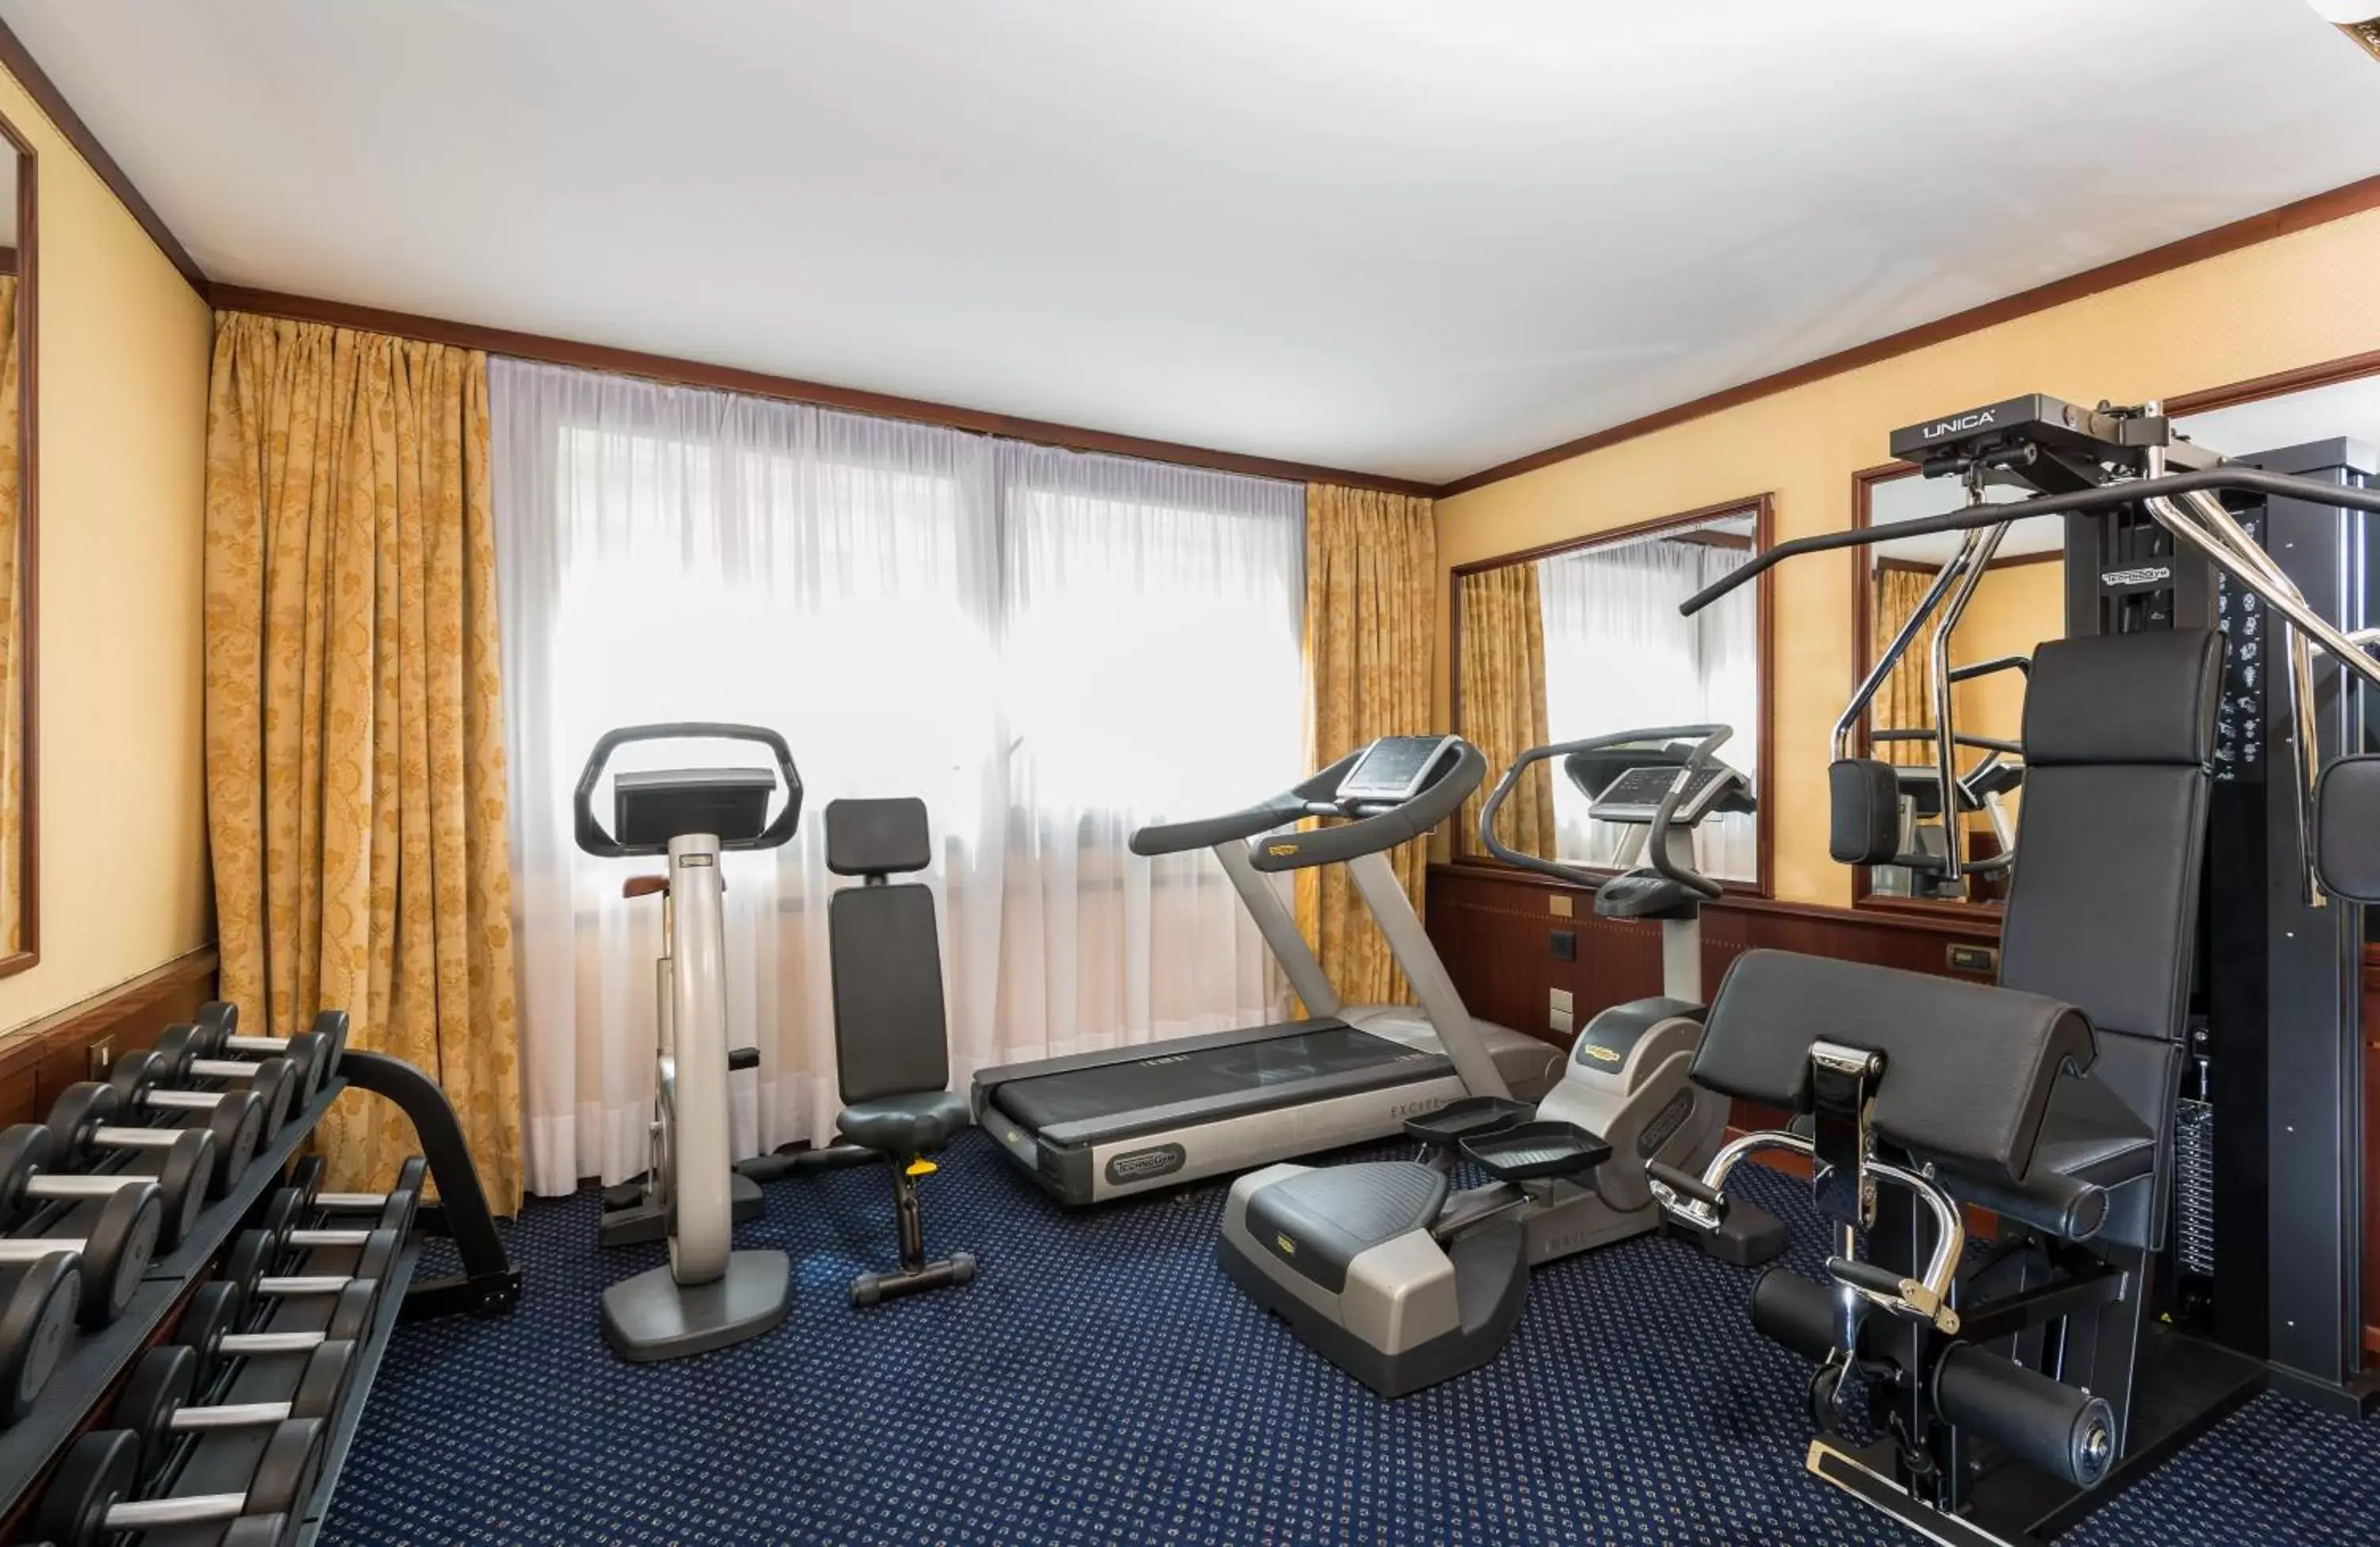 Fitness centre/facilities, Fitness Center/Facilities in Leonardo Hotel Milan City Center